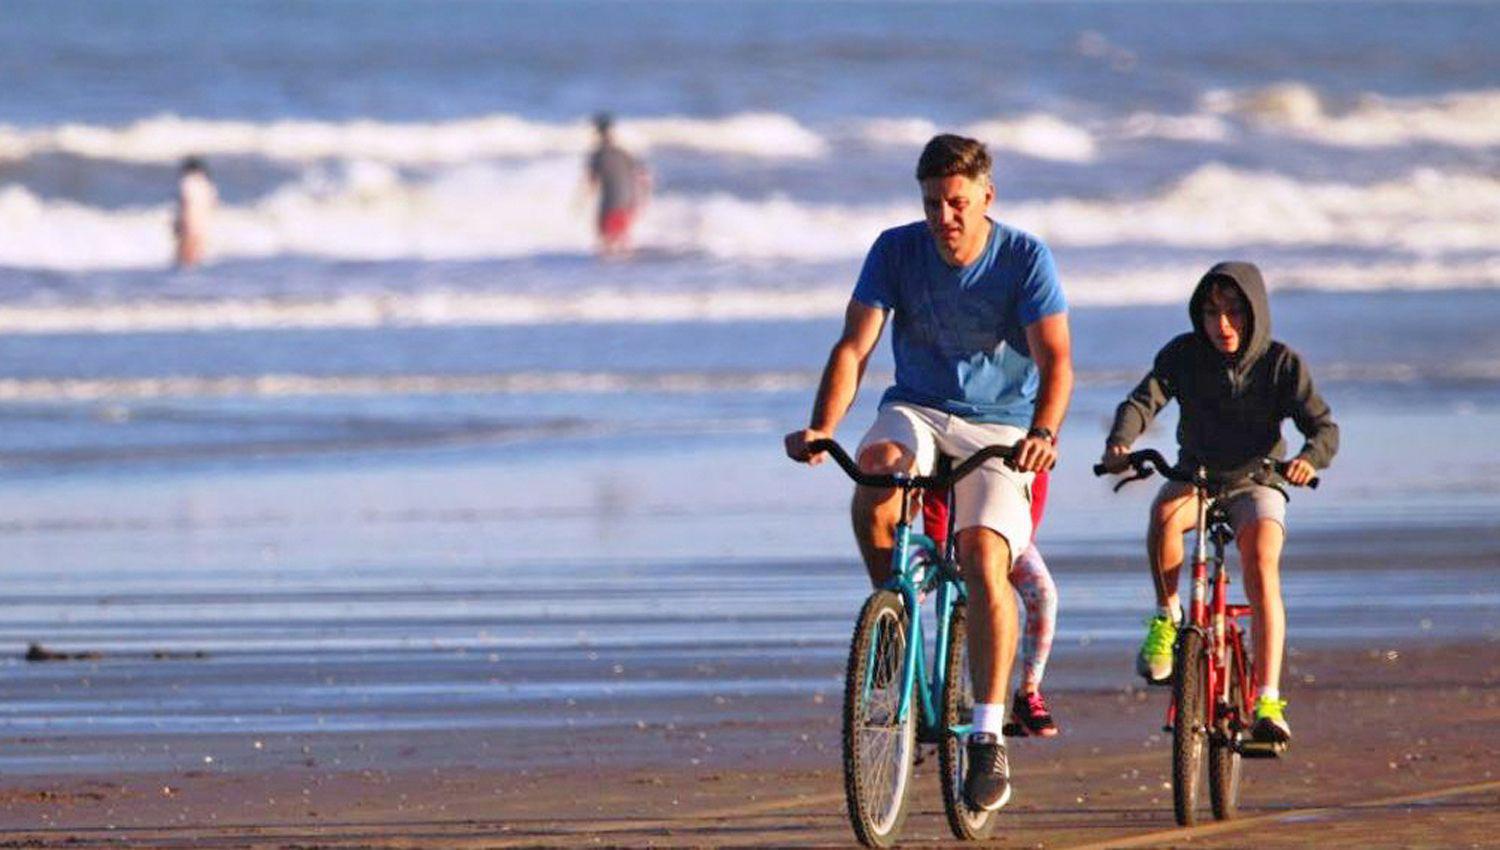 El cicloturismo otra propuesta de la Costa Atlaacutentica que  combina deporte y la naturaleza